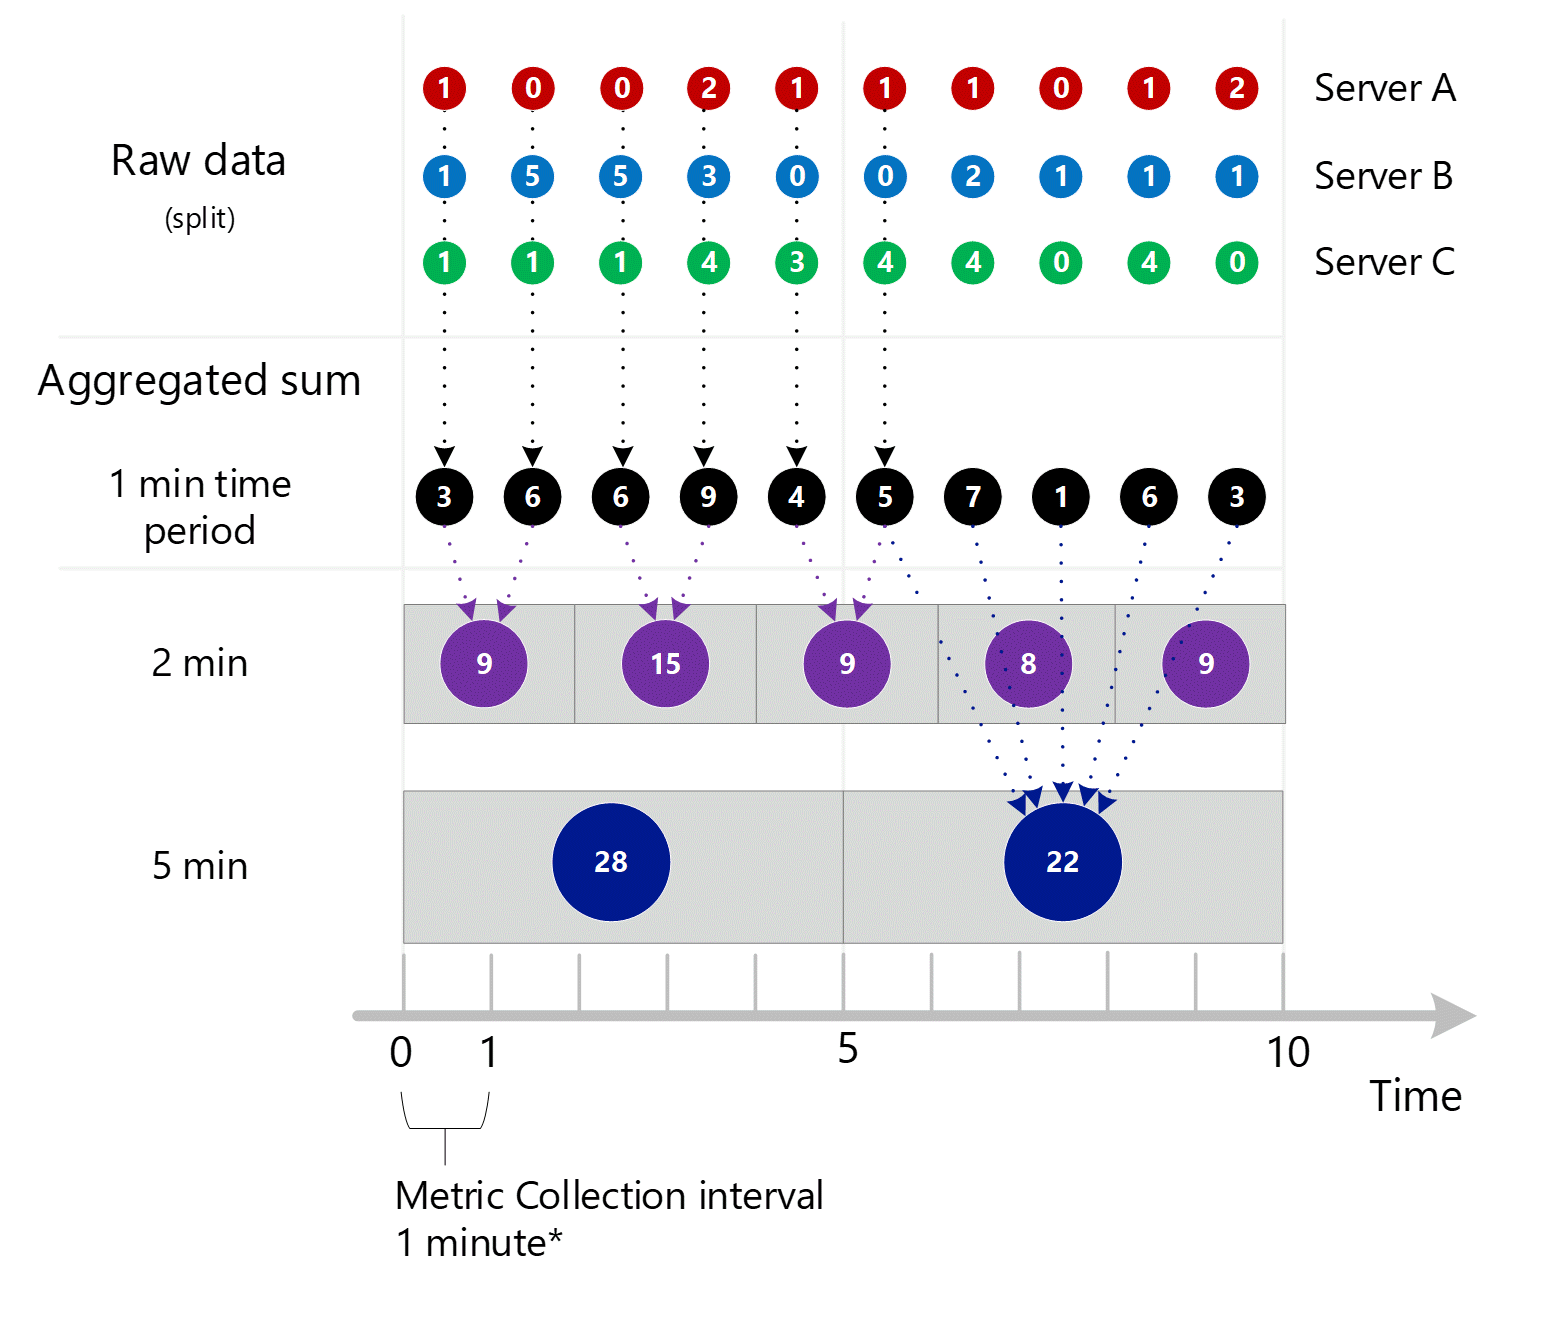 Captura de tela mostrando a consolidação das três capturas de tela anteriores. Várias entradas agregadas de 1 minuto na dimensão do servidor agregadas em intervalos de 1 minuto, 2 minutos e 5 minutos. Servidor A, B e C mostrados individualmente